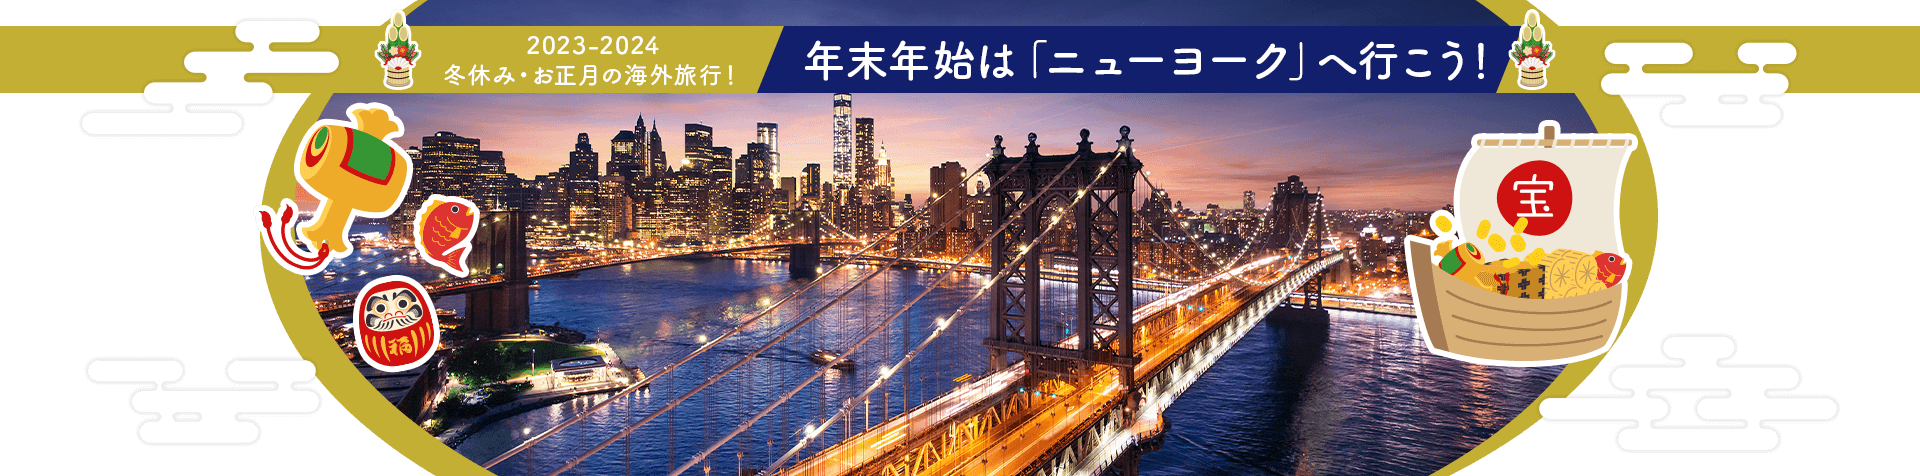 2023-2024 冬休み・お正月の海外旅行！ 年末年始は「ニューヨーク」へ行こう！